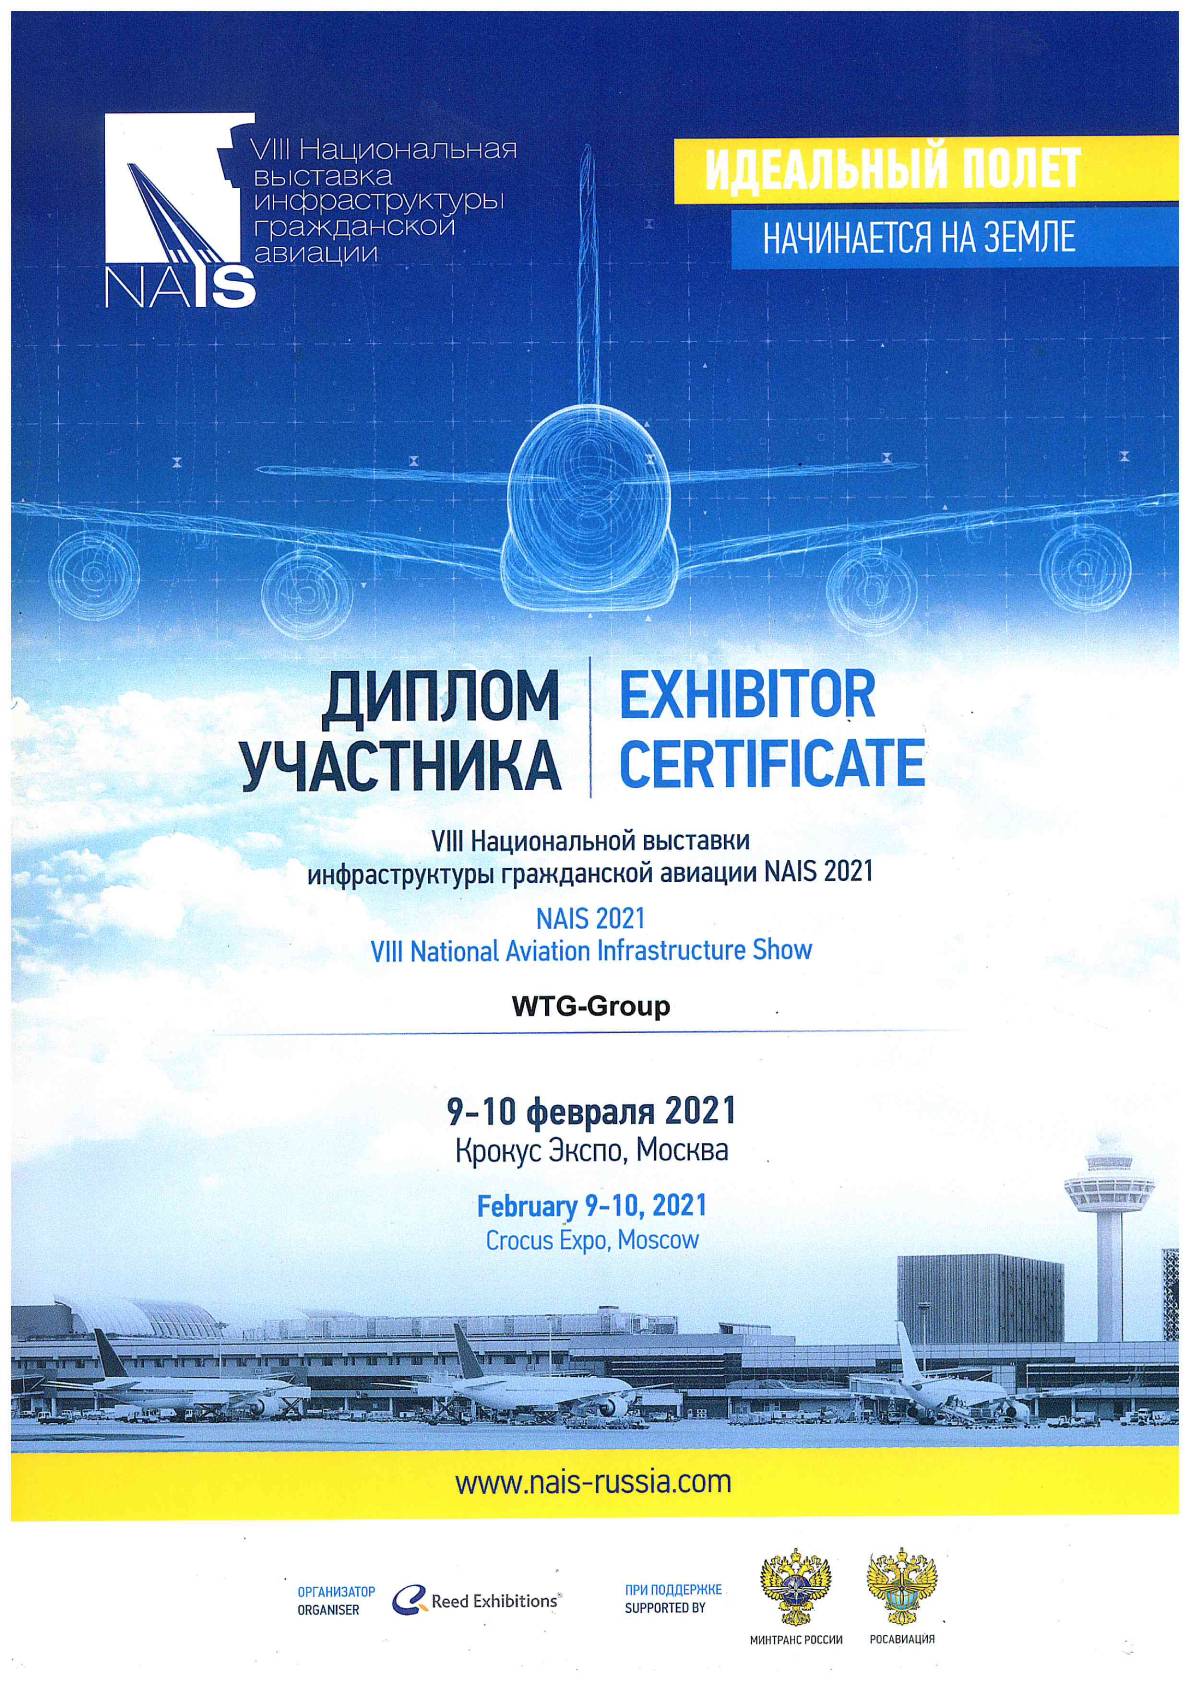 <p>
	 VIII Национальной выставки инфраструктуры гражданской авиации NAIS 2021
</p>